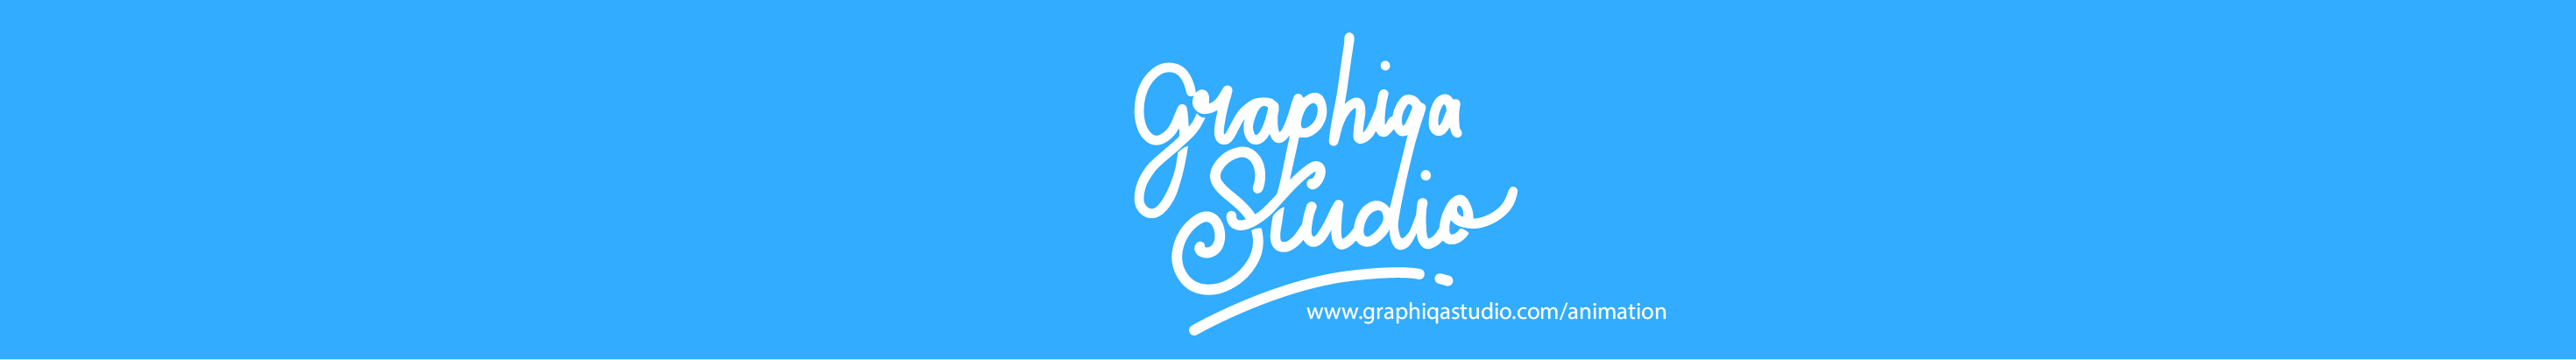 Graphiqa Studio's profile banner